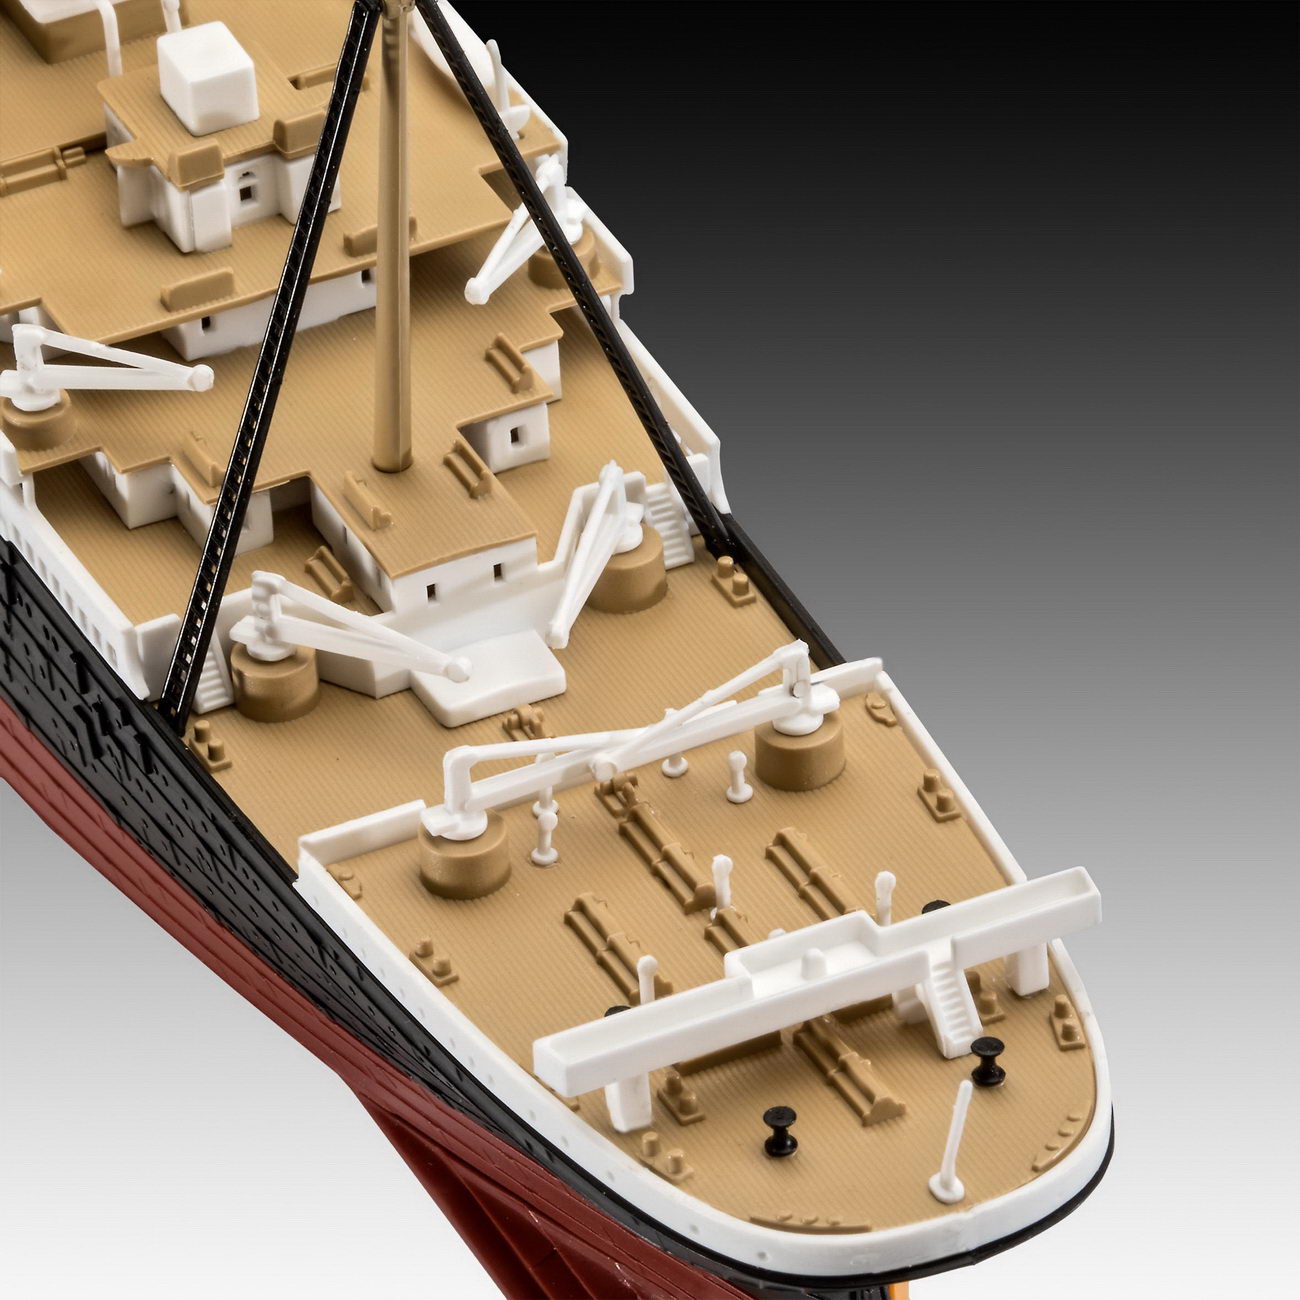 Revell 05498 - RMS TITANIC - Modell Schiff